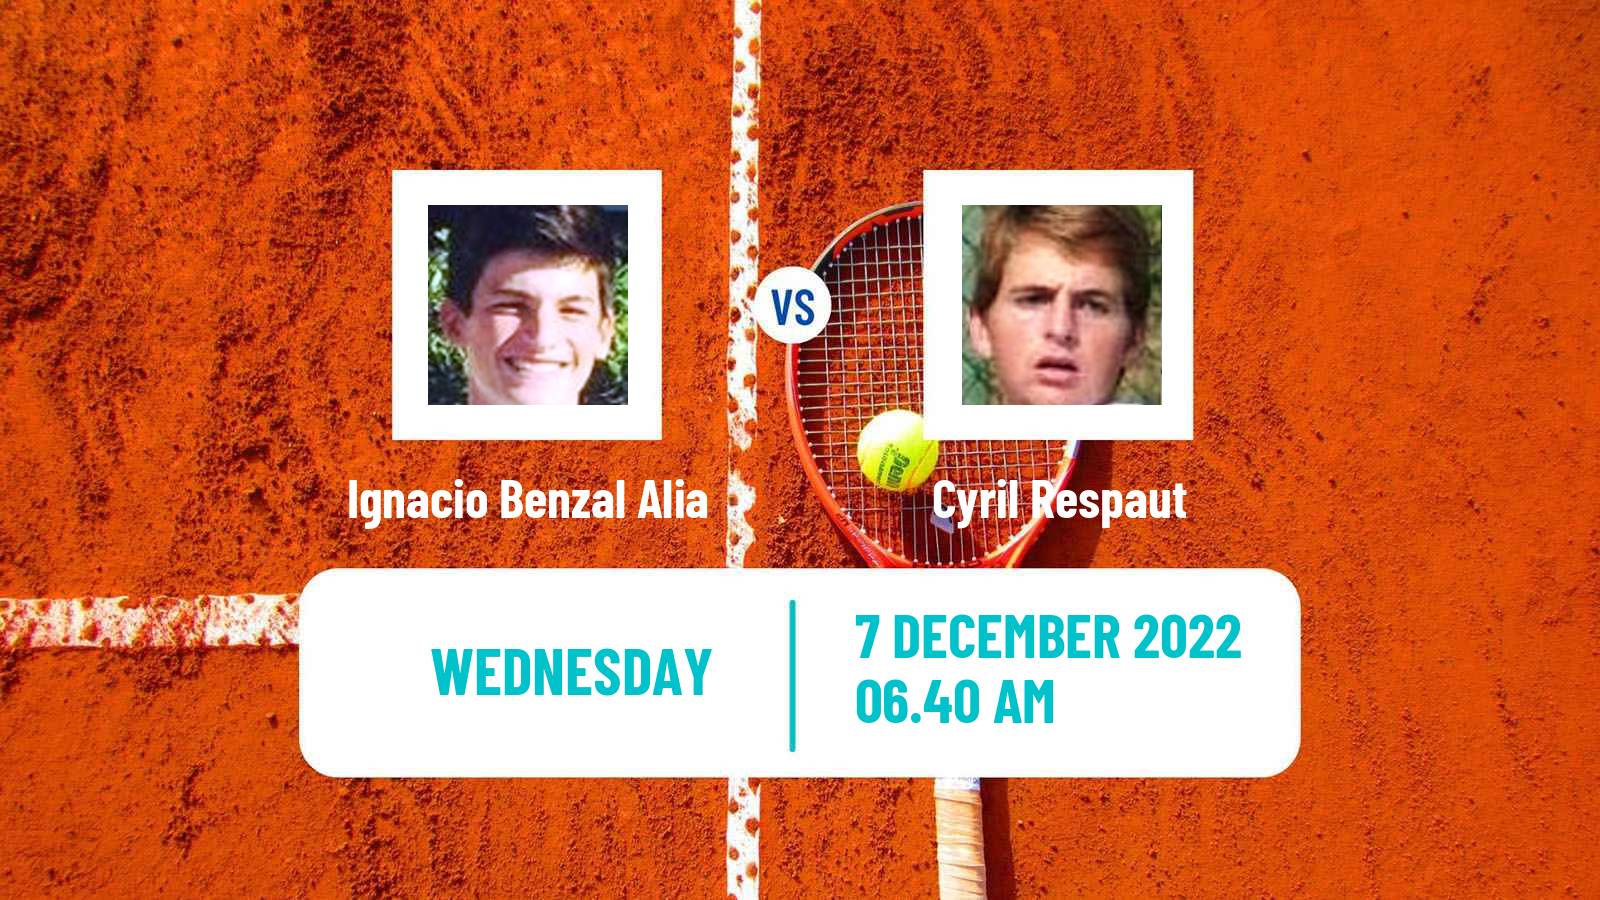 Tennis ITF Tournaments Ignacio Benzal Alia - Cyril Respaut